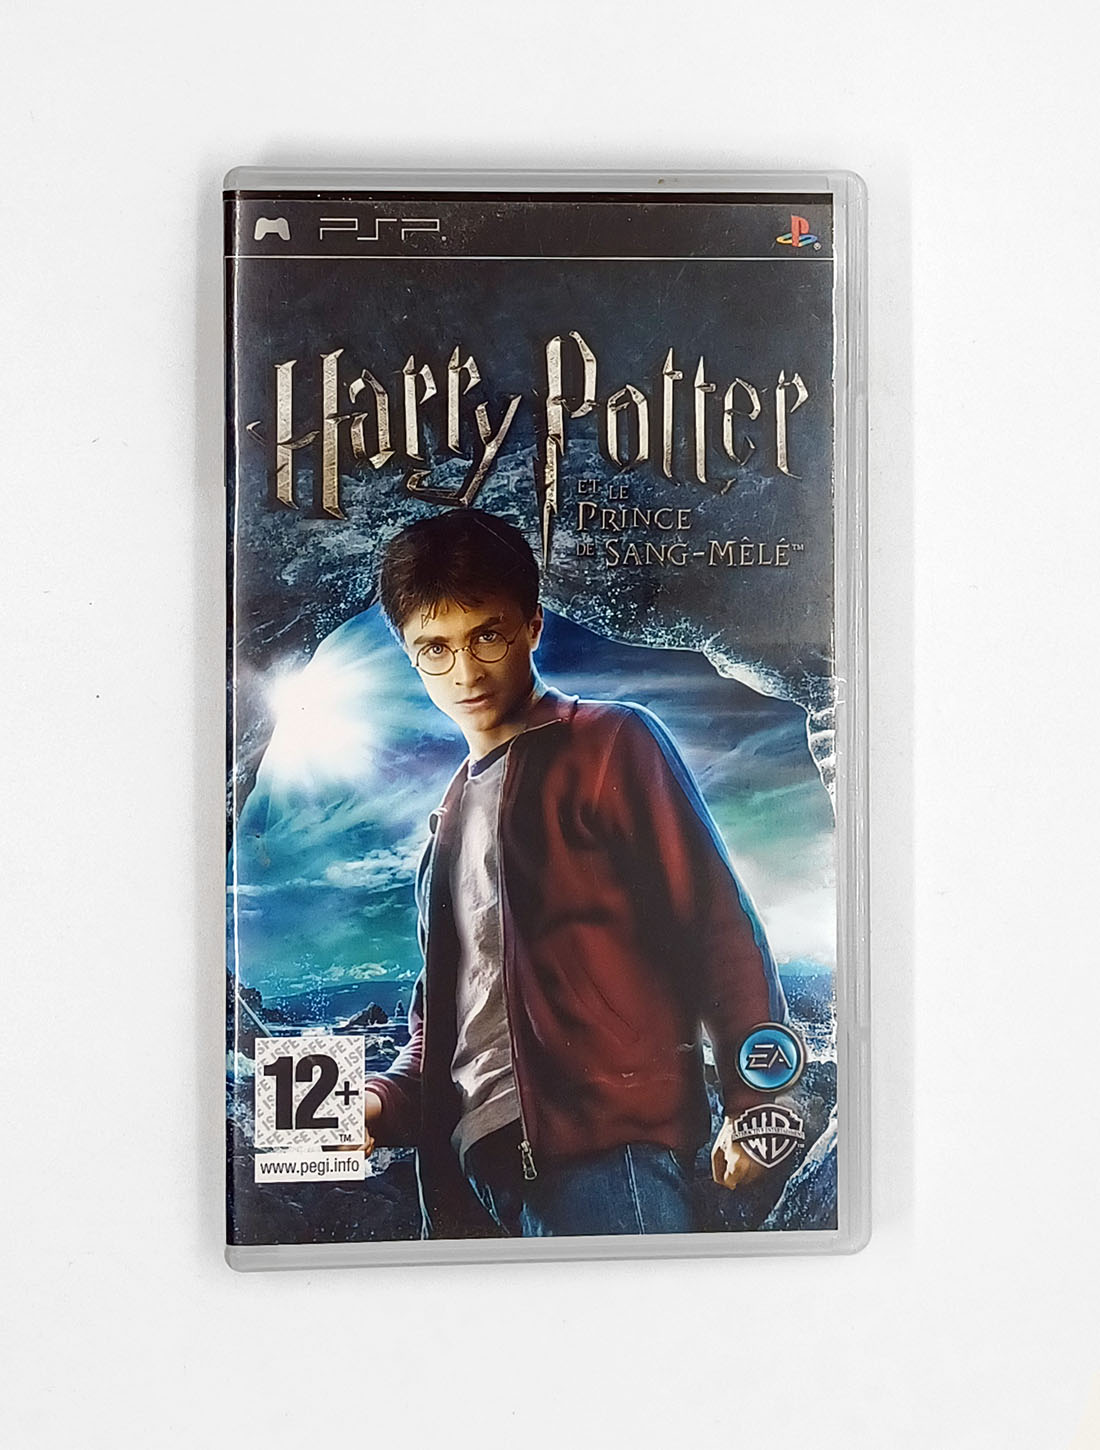 Harry Potter et le Prince de Sang-Mêlé sur Wii 